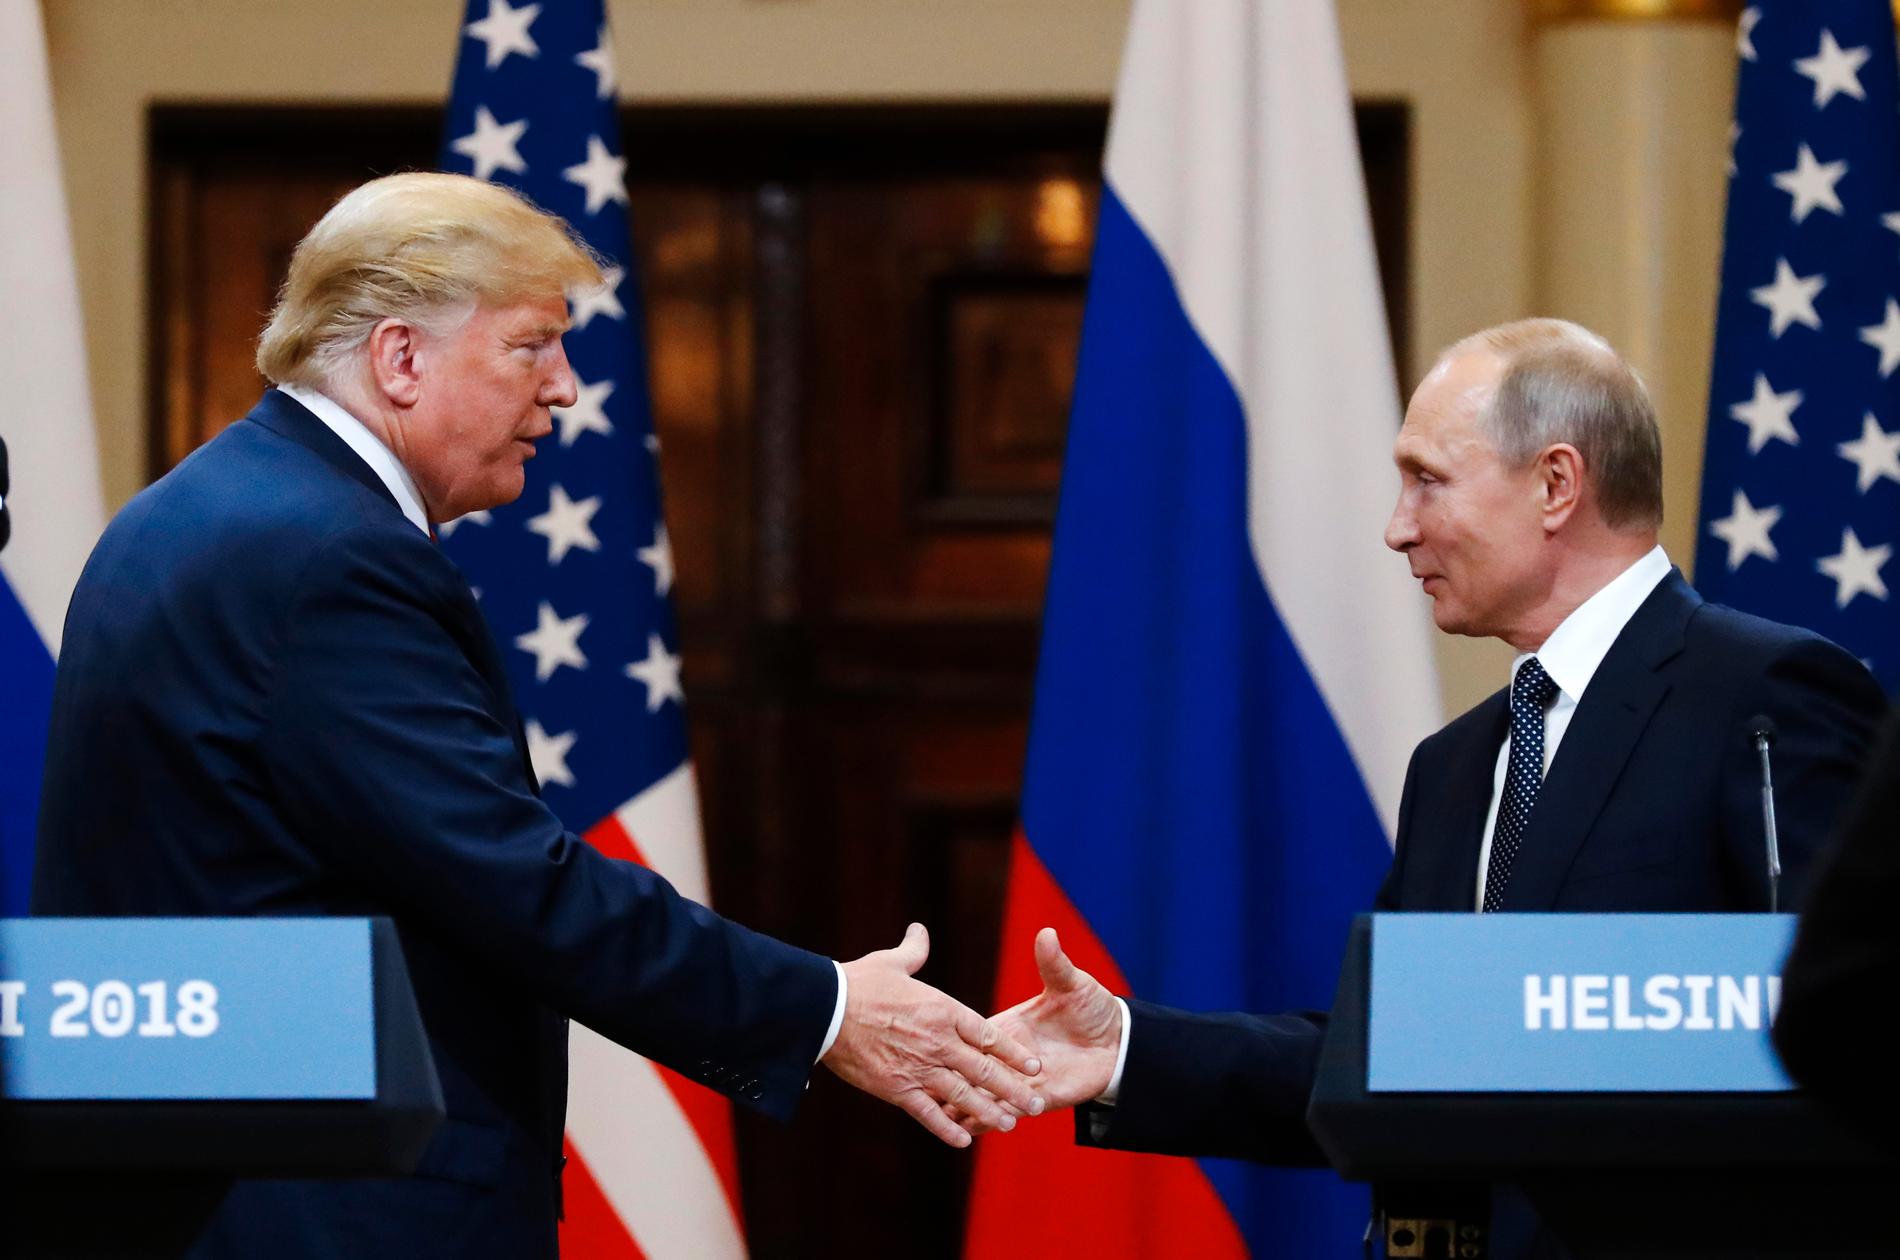 USA:s president Donald Trump skakar hand med Rysslands president Vladimir Putin vid presskonferensen efter deras möte i Helsingfors under måndagen.